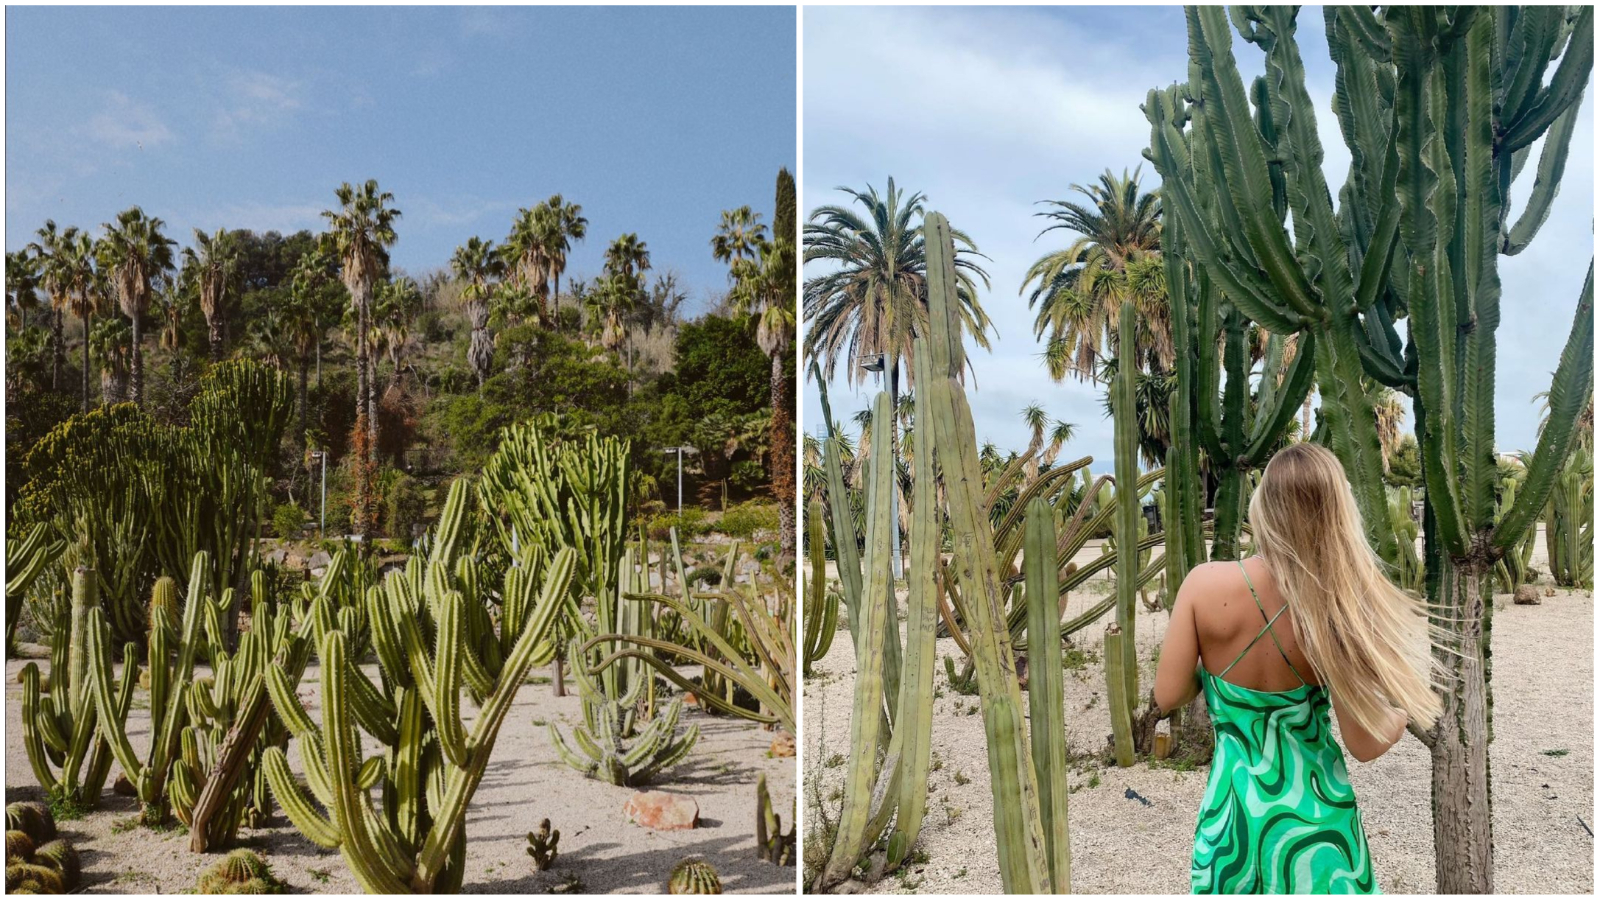 Pronašli smo čaroban park kaktusa koji želimo posjetiti već početkom ovog proljeća